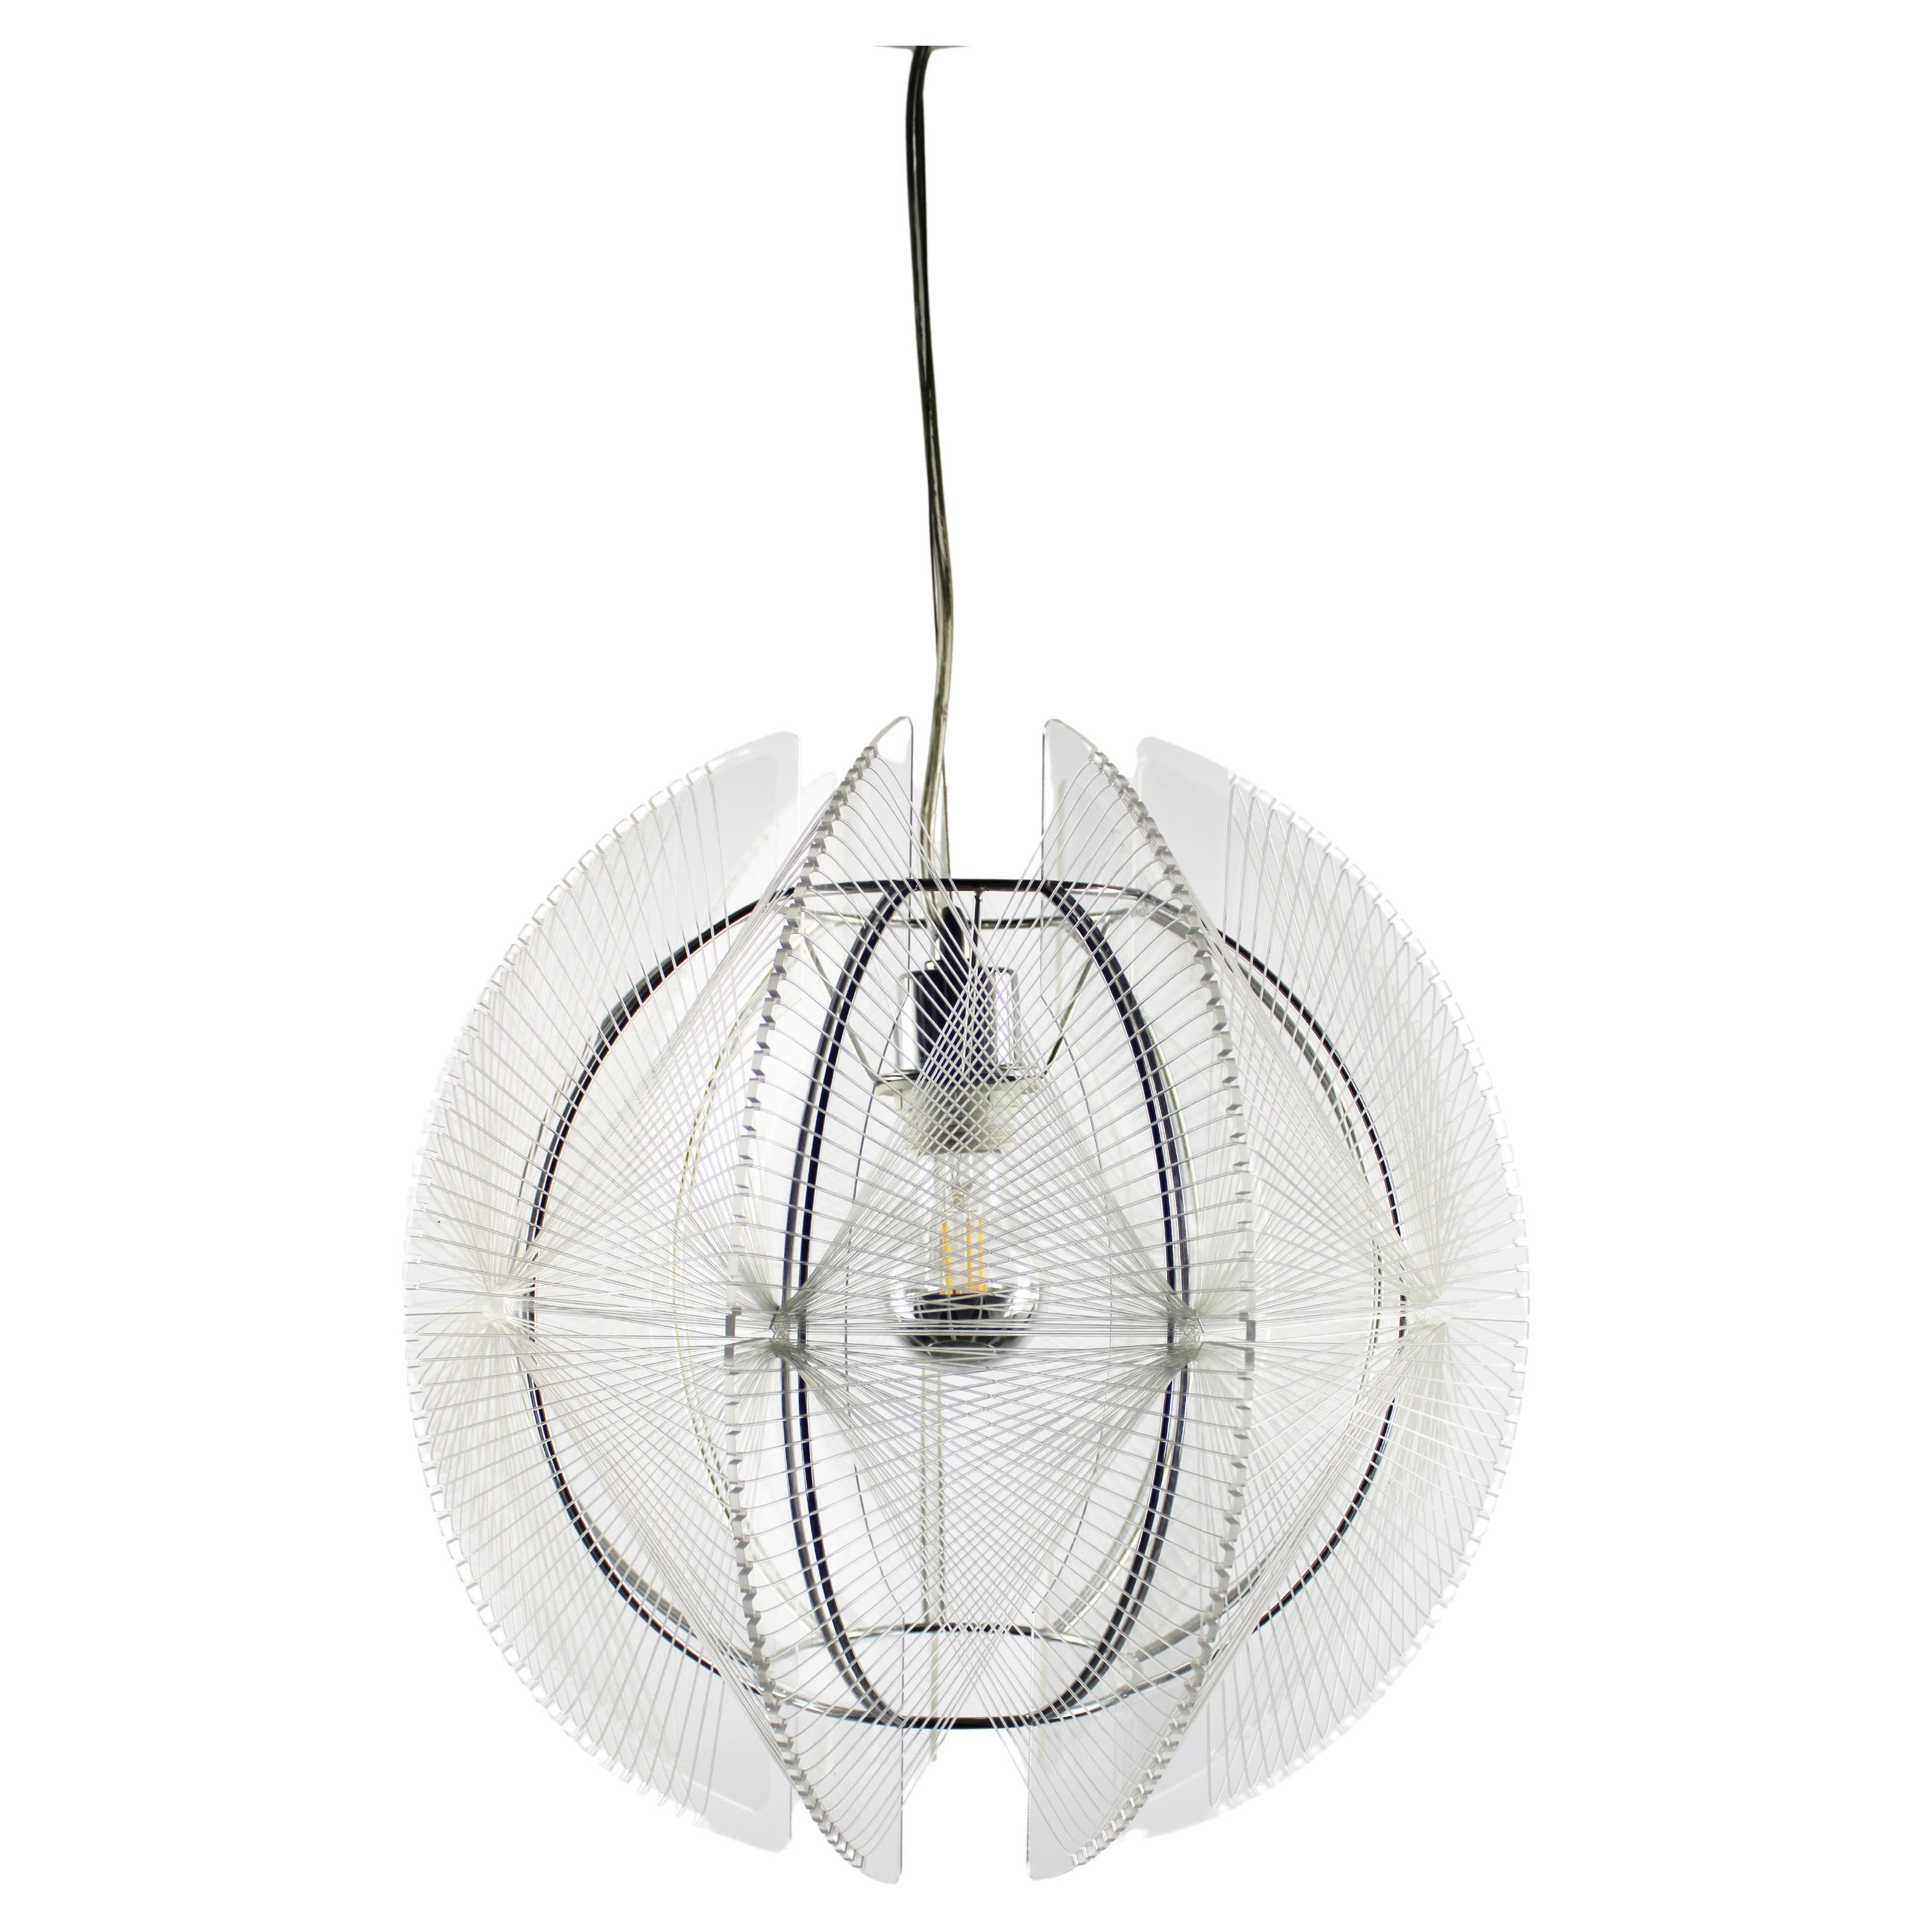 Paul Secon Pendant Lamp Sompex Mid-century Nylon Plexiglass 1970s Germany